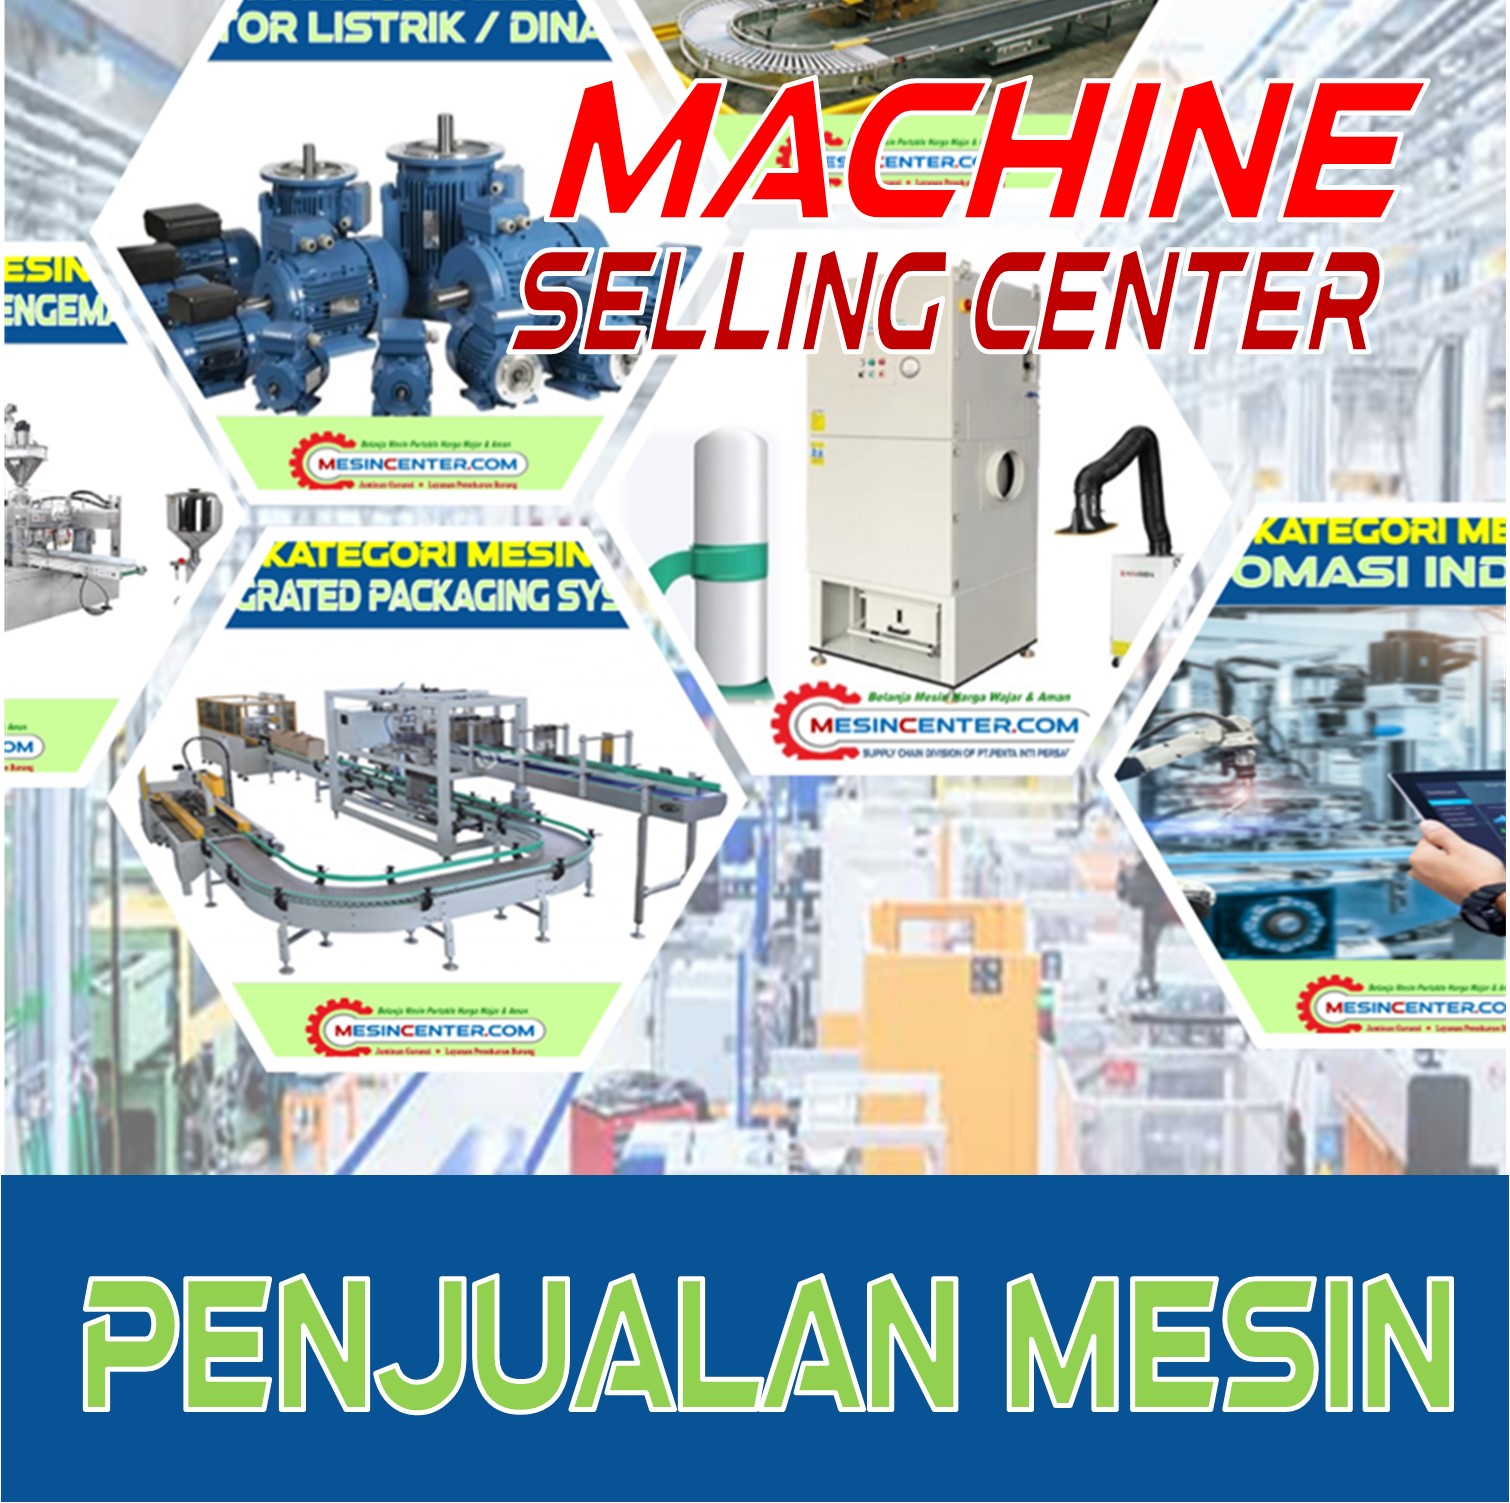 machine-sell-center123E8C45-C90C-A3D4-3048-306A8081D886.jpg